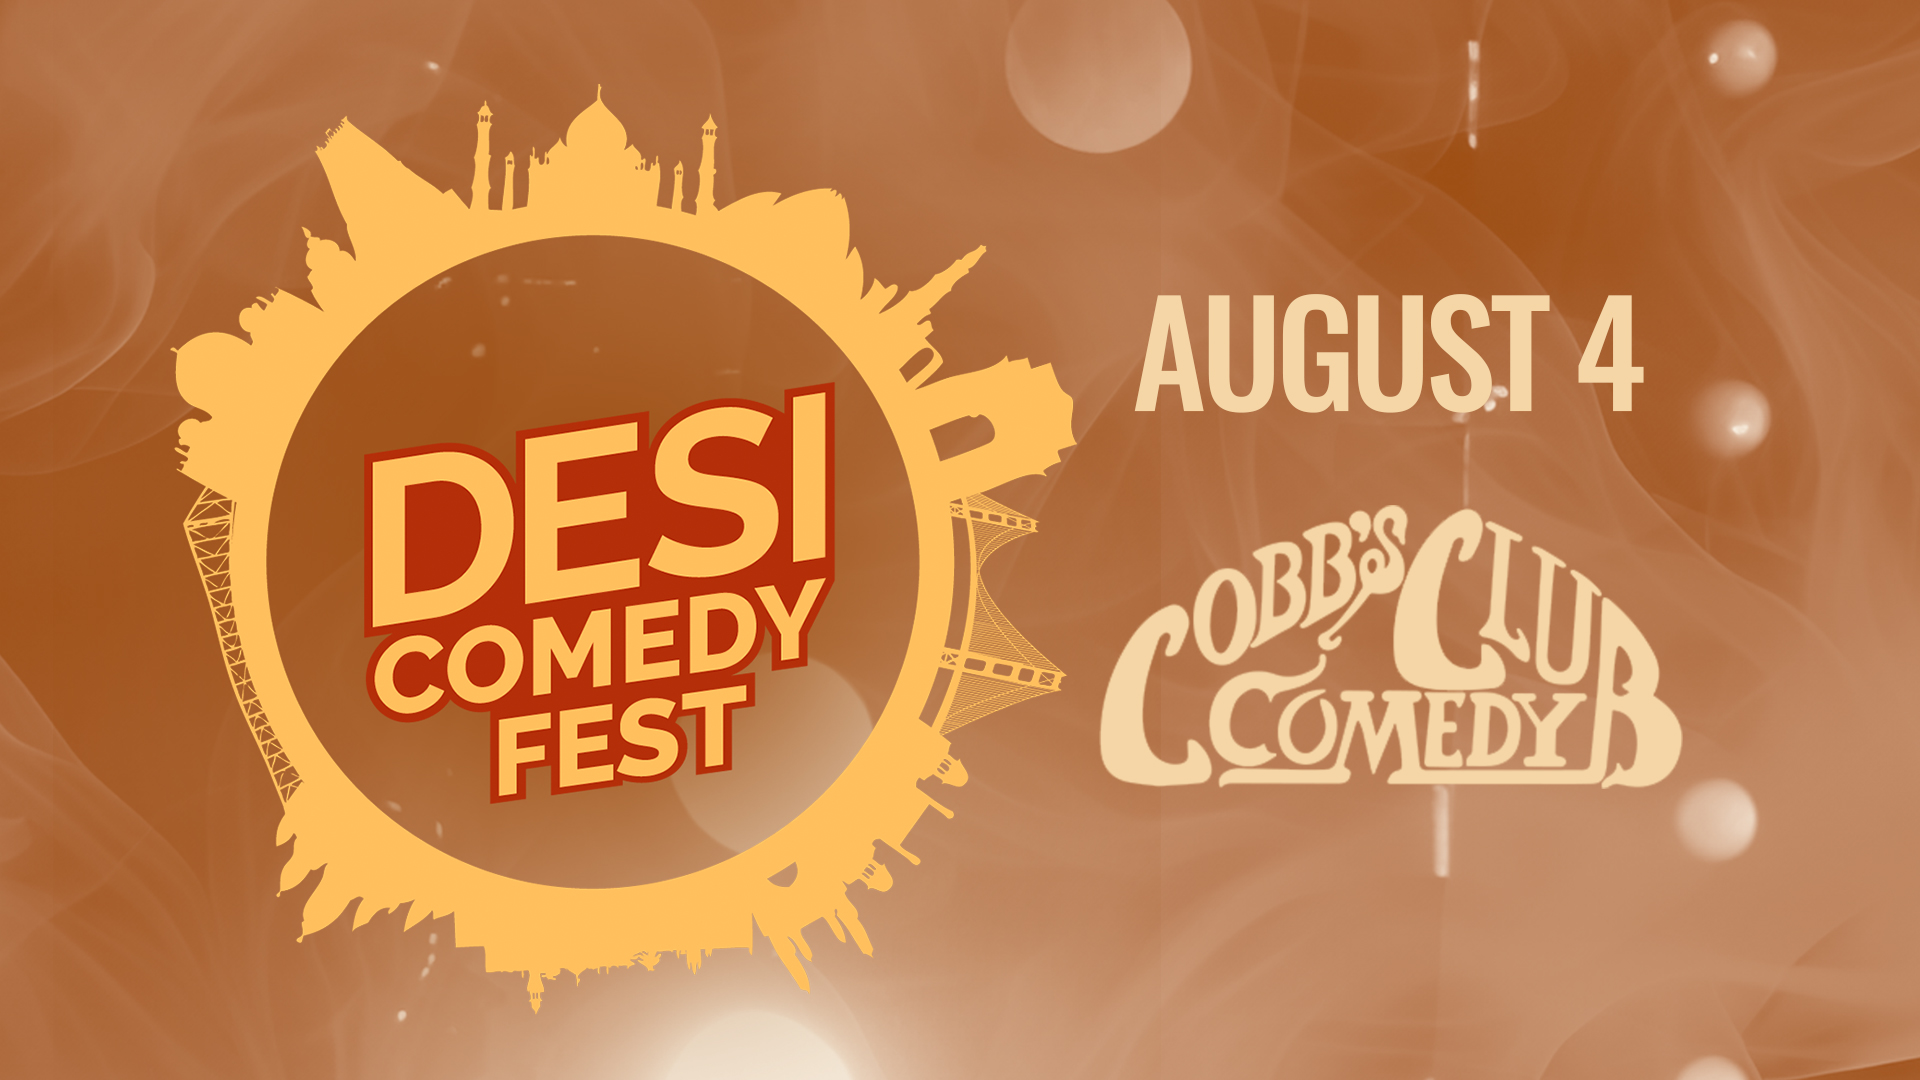 10th Annual Desi Comedy Fest